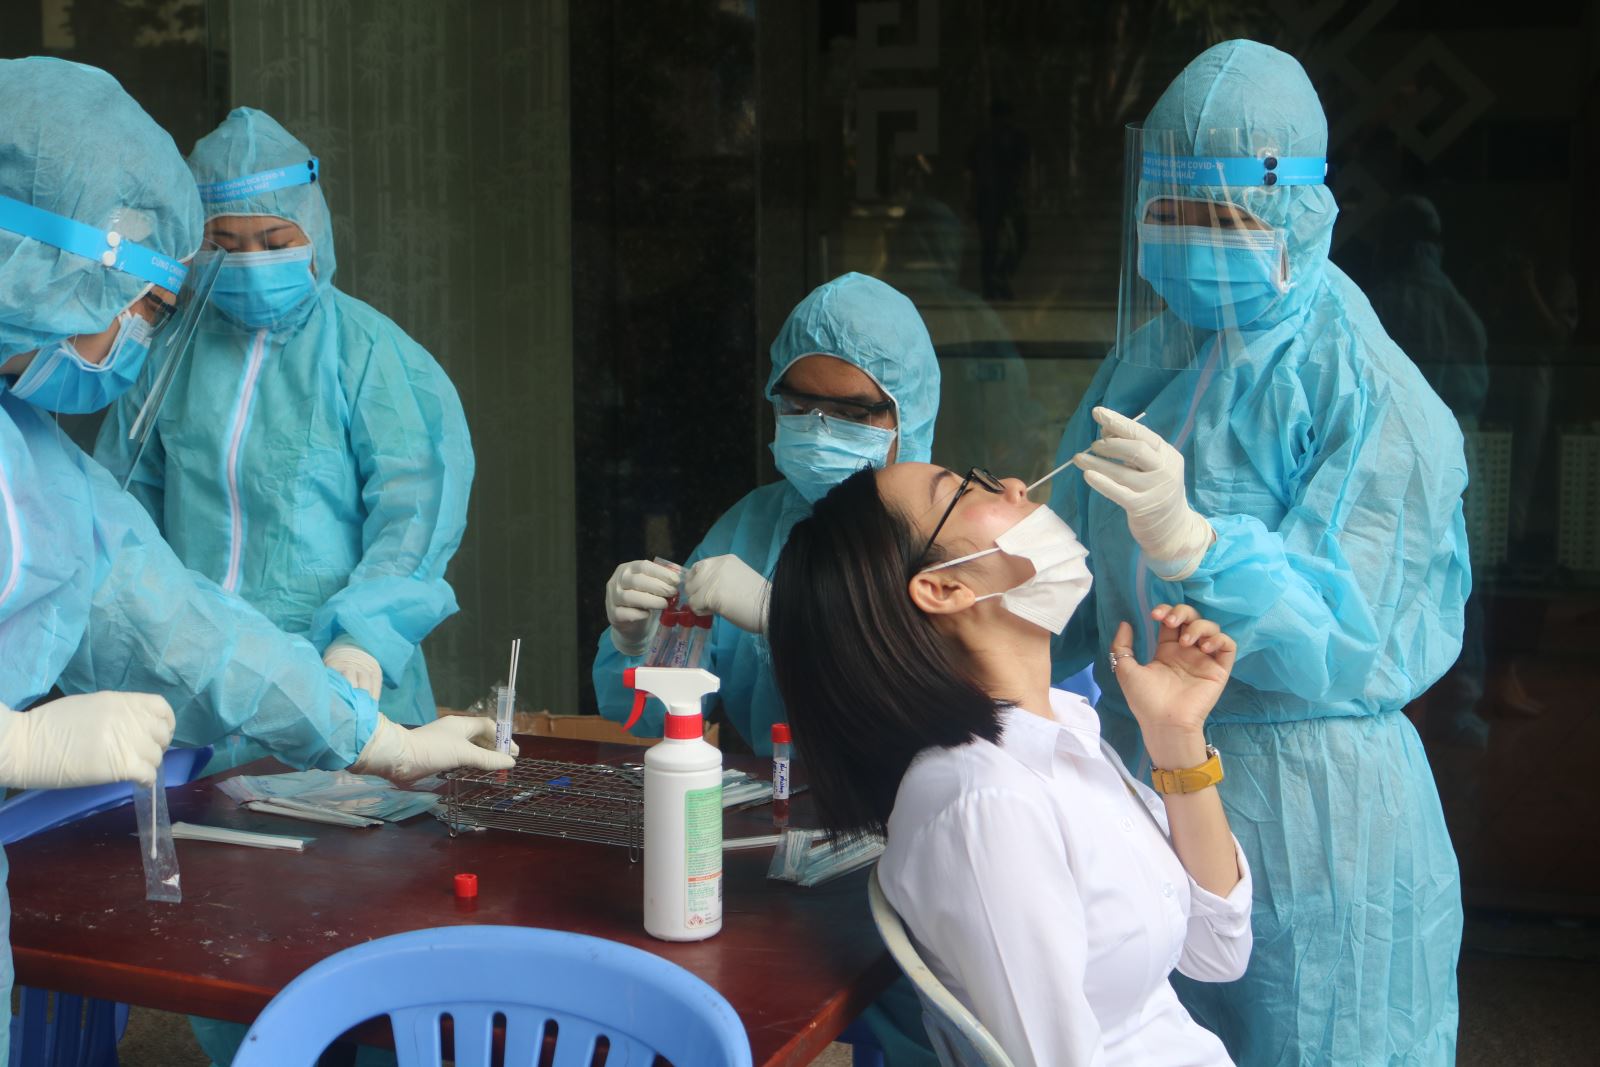 Nhóm bạn tại TP Hồ Chí Minh đi cùng với bệnh nhân 3298 tại thành phố Đà Nẵng đã có kết quả âm tính lần 1.